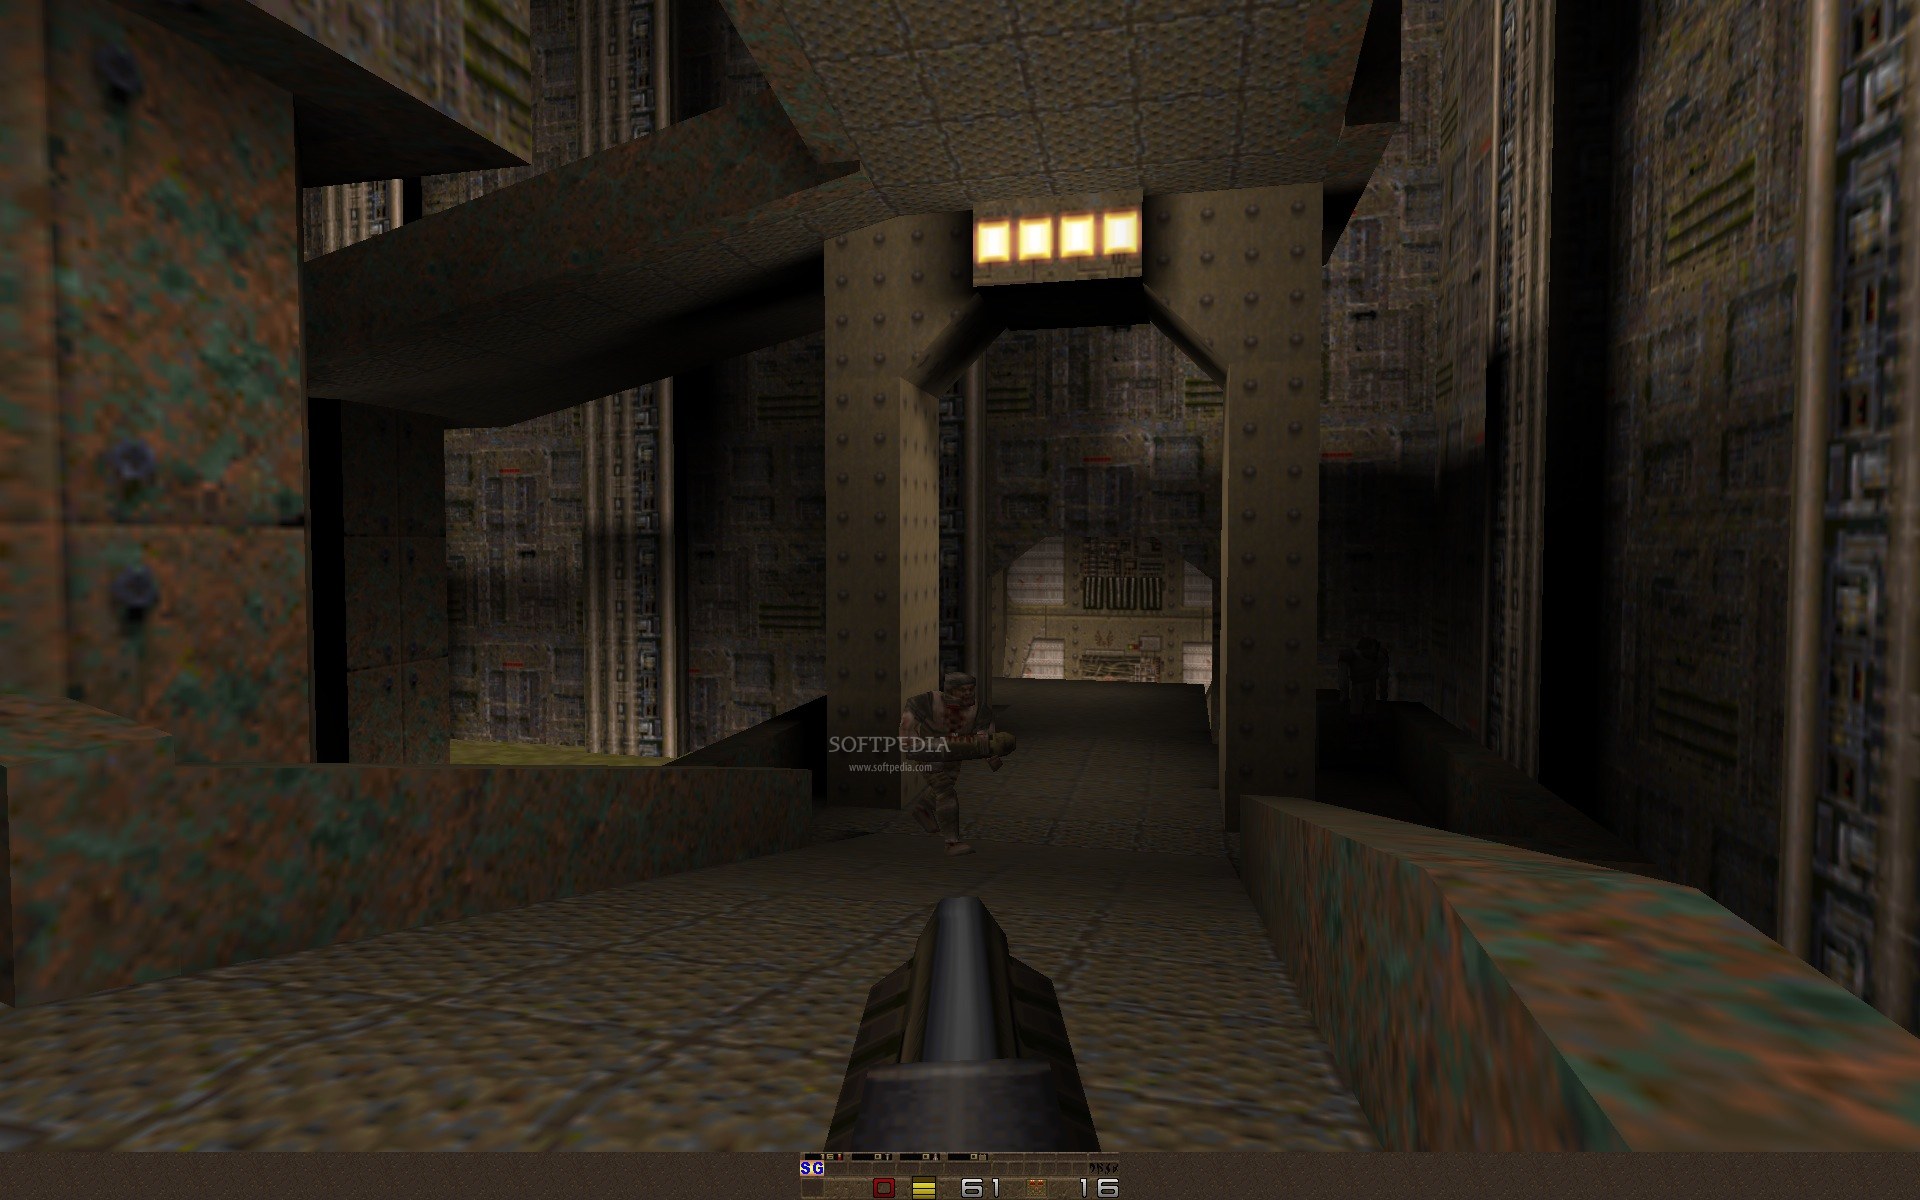 Quake 2 online, free